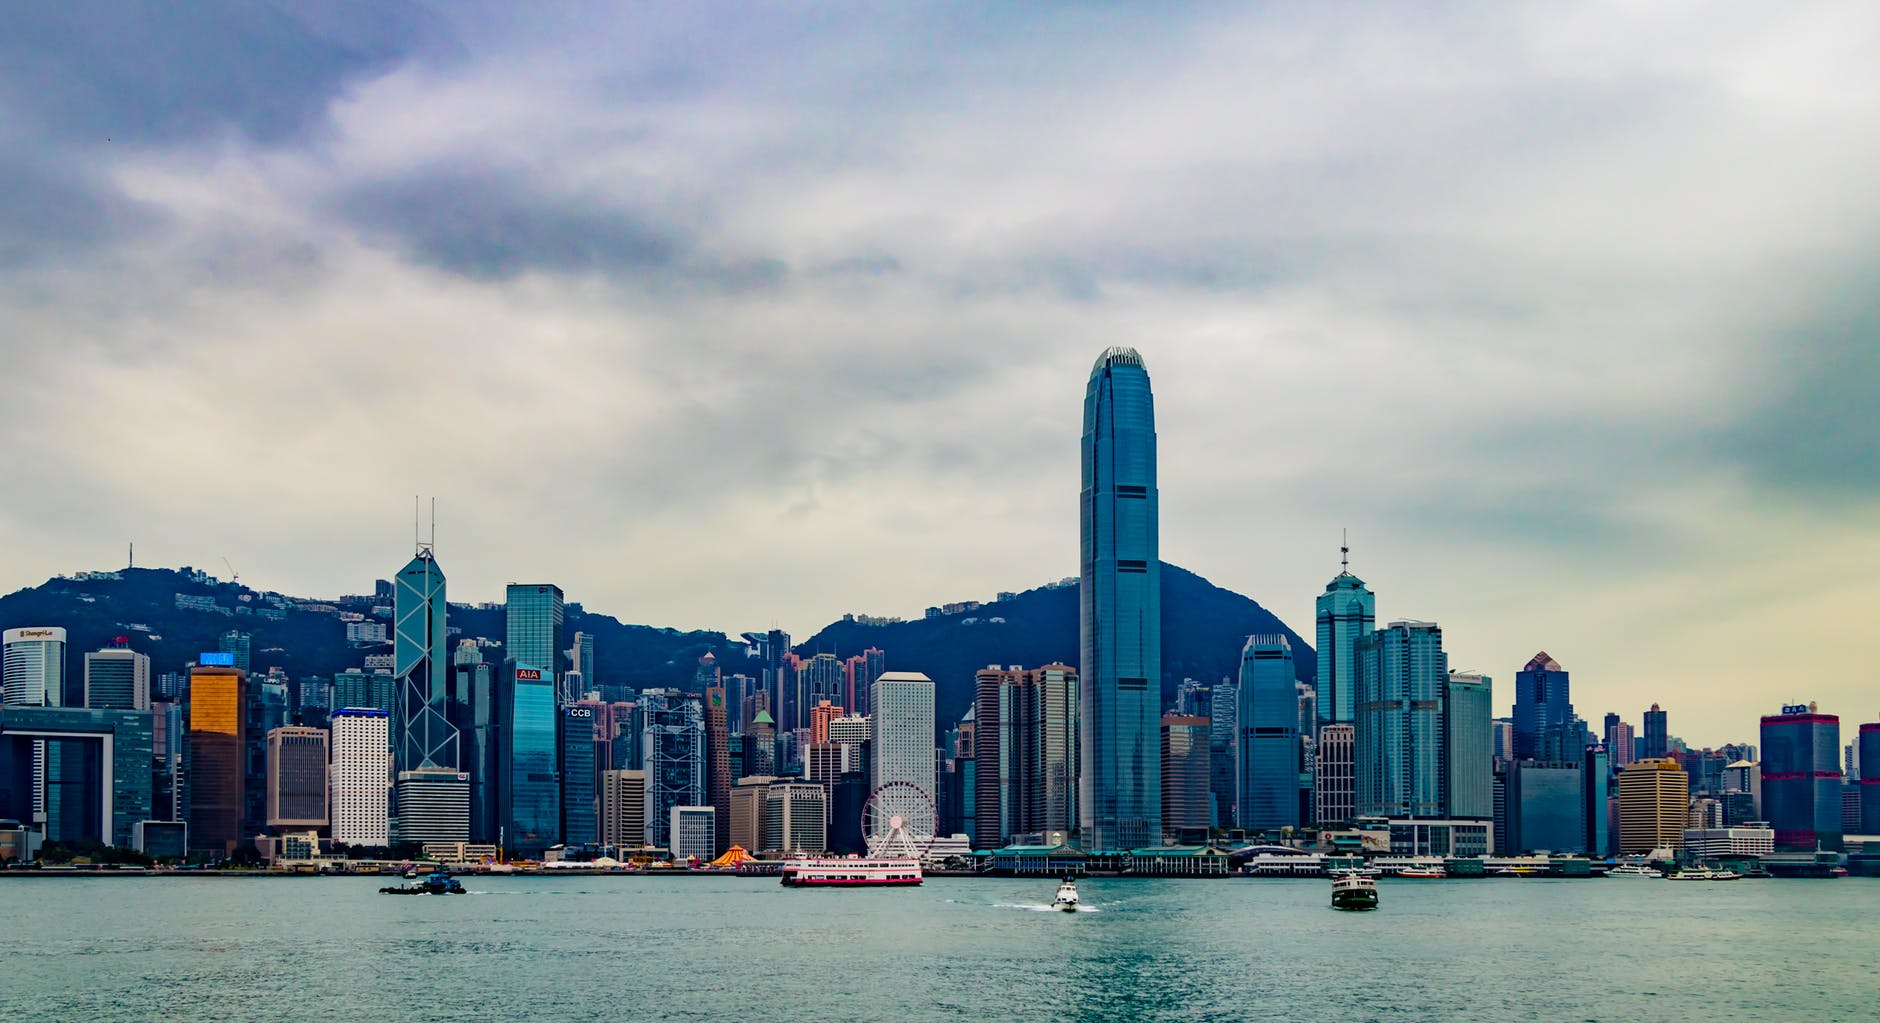 香港中小企名單 Hong Kong SME List : 搜集香港各中小企 SME 的服務資訊，從行業性質分門別類，大眾可預約、評分各中小企的服務。 中小企亦可在此作網上市場宣傳推廣，增加曝光，迎來更多商機。